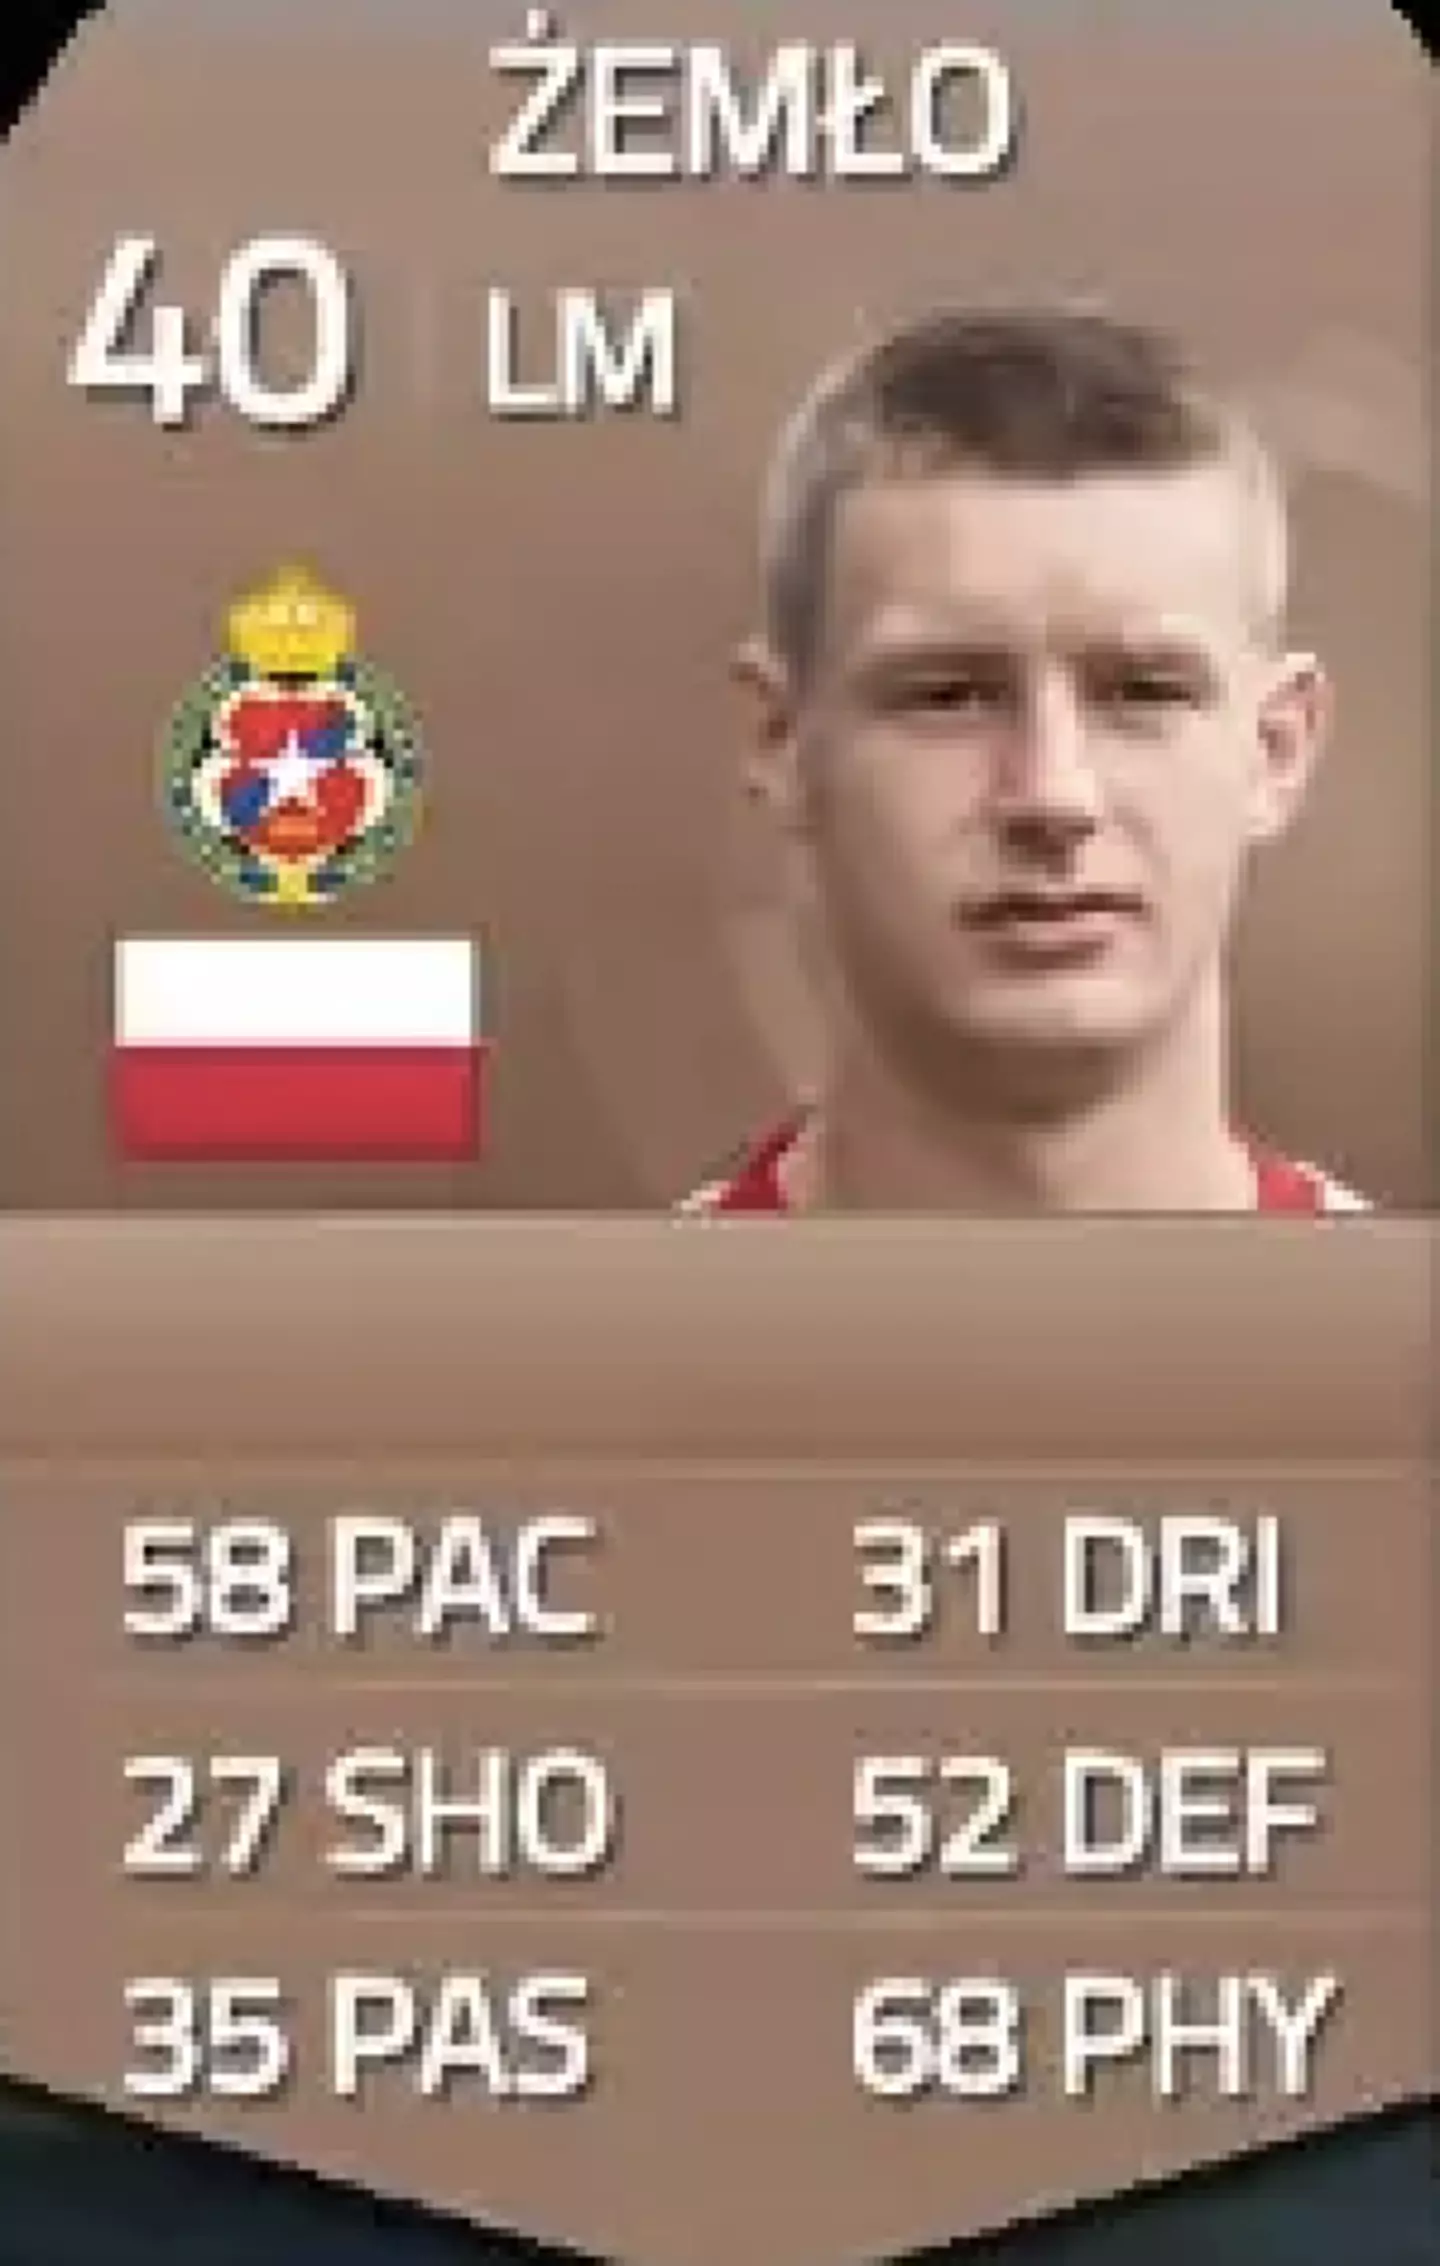 Piotr Zemlo's card on FIFA 15 (